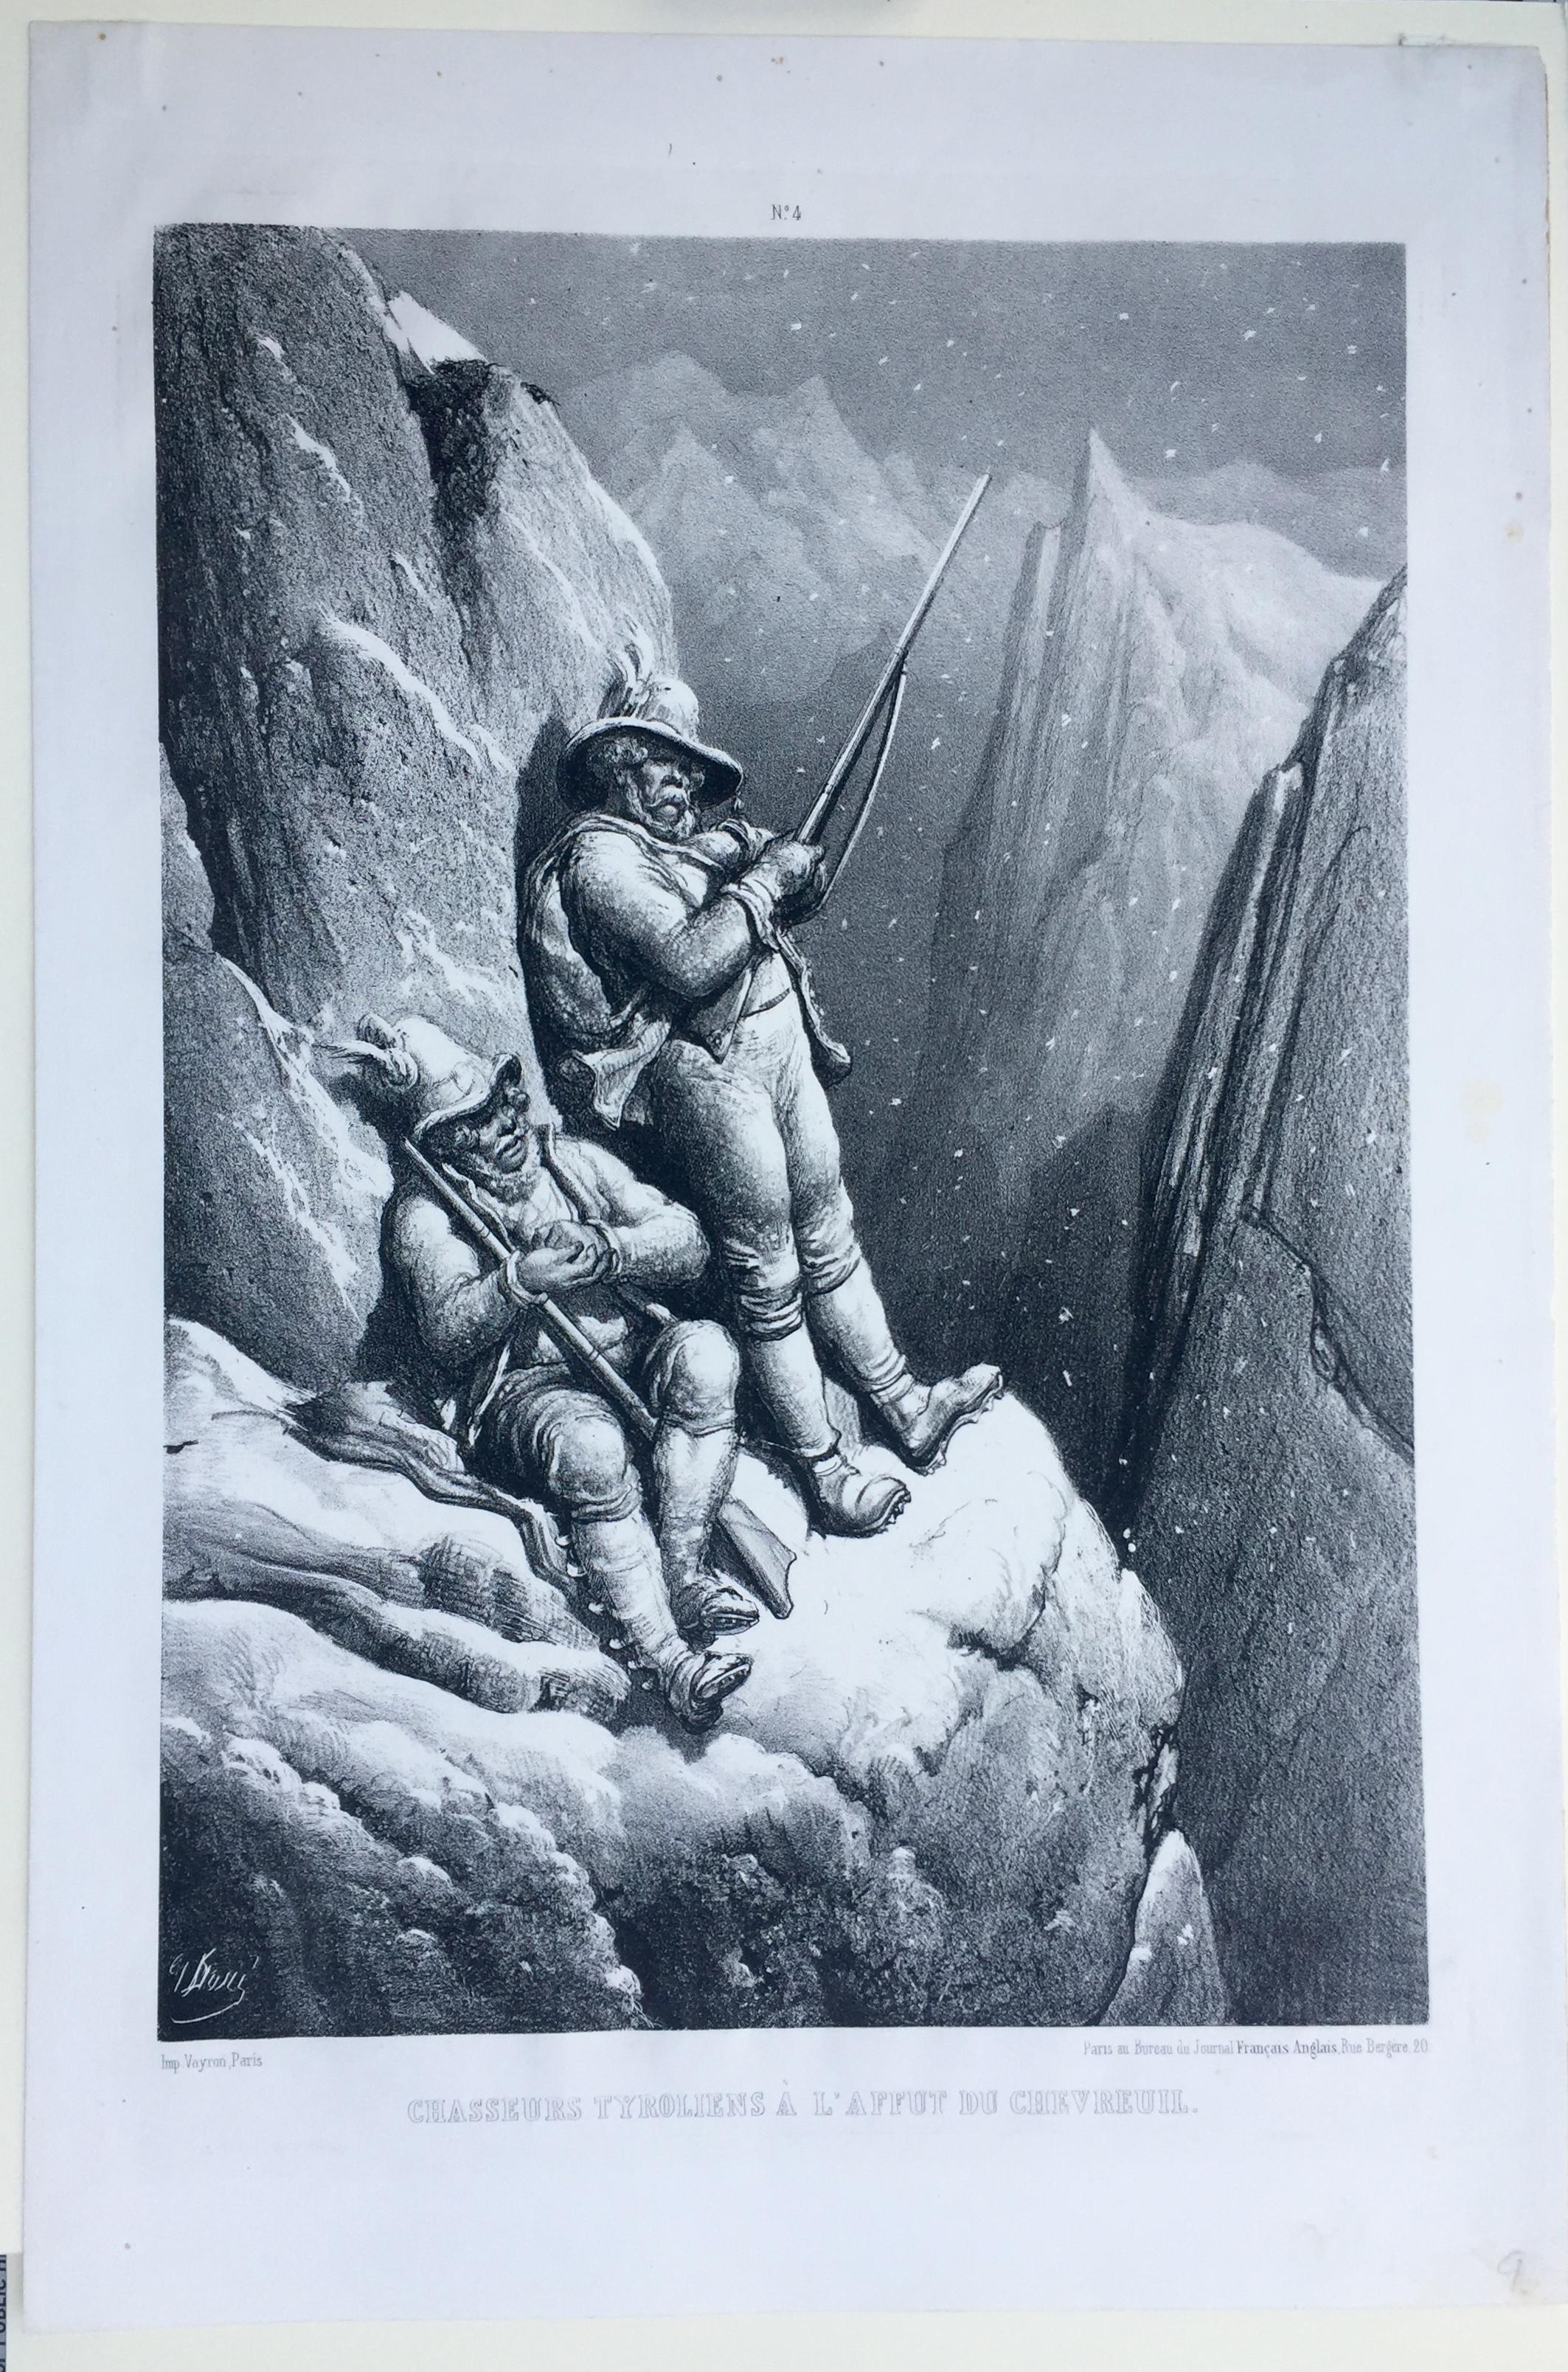 CHASSEURS TYROLIENS A L'AFFUT DU CHEVREUIL - Print by Gustave Doré